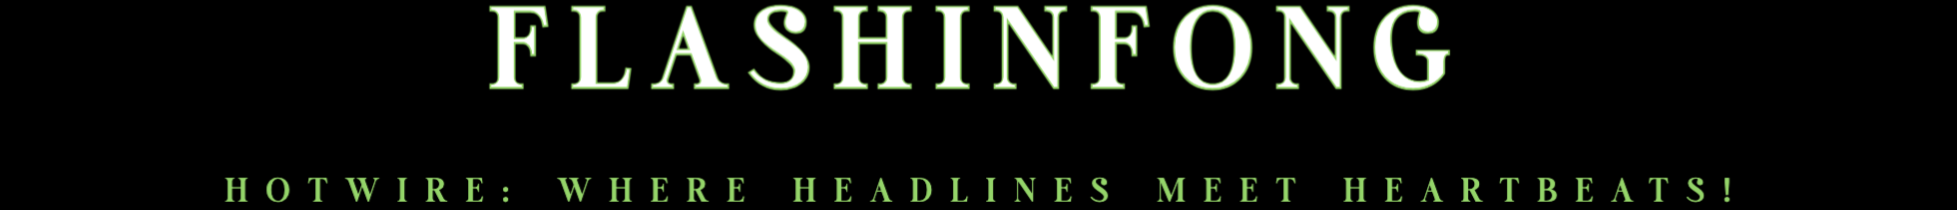 Flashinfong logo